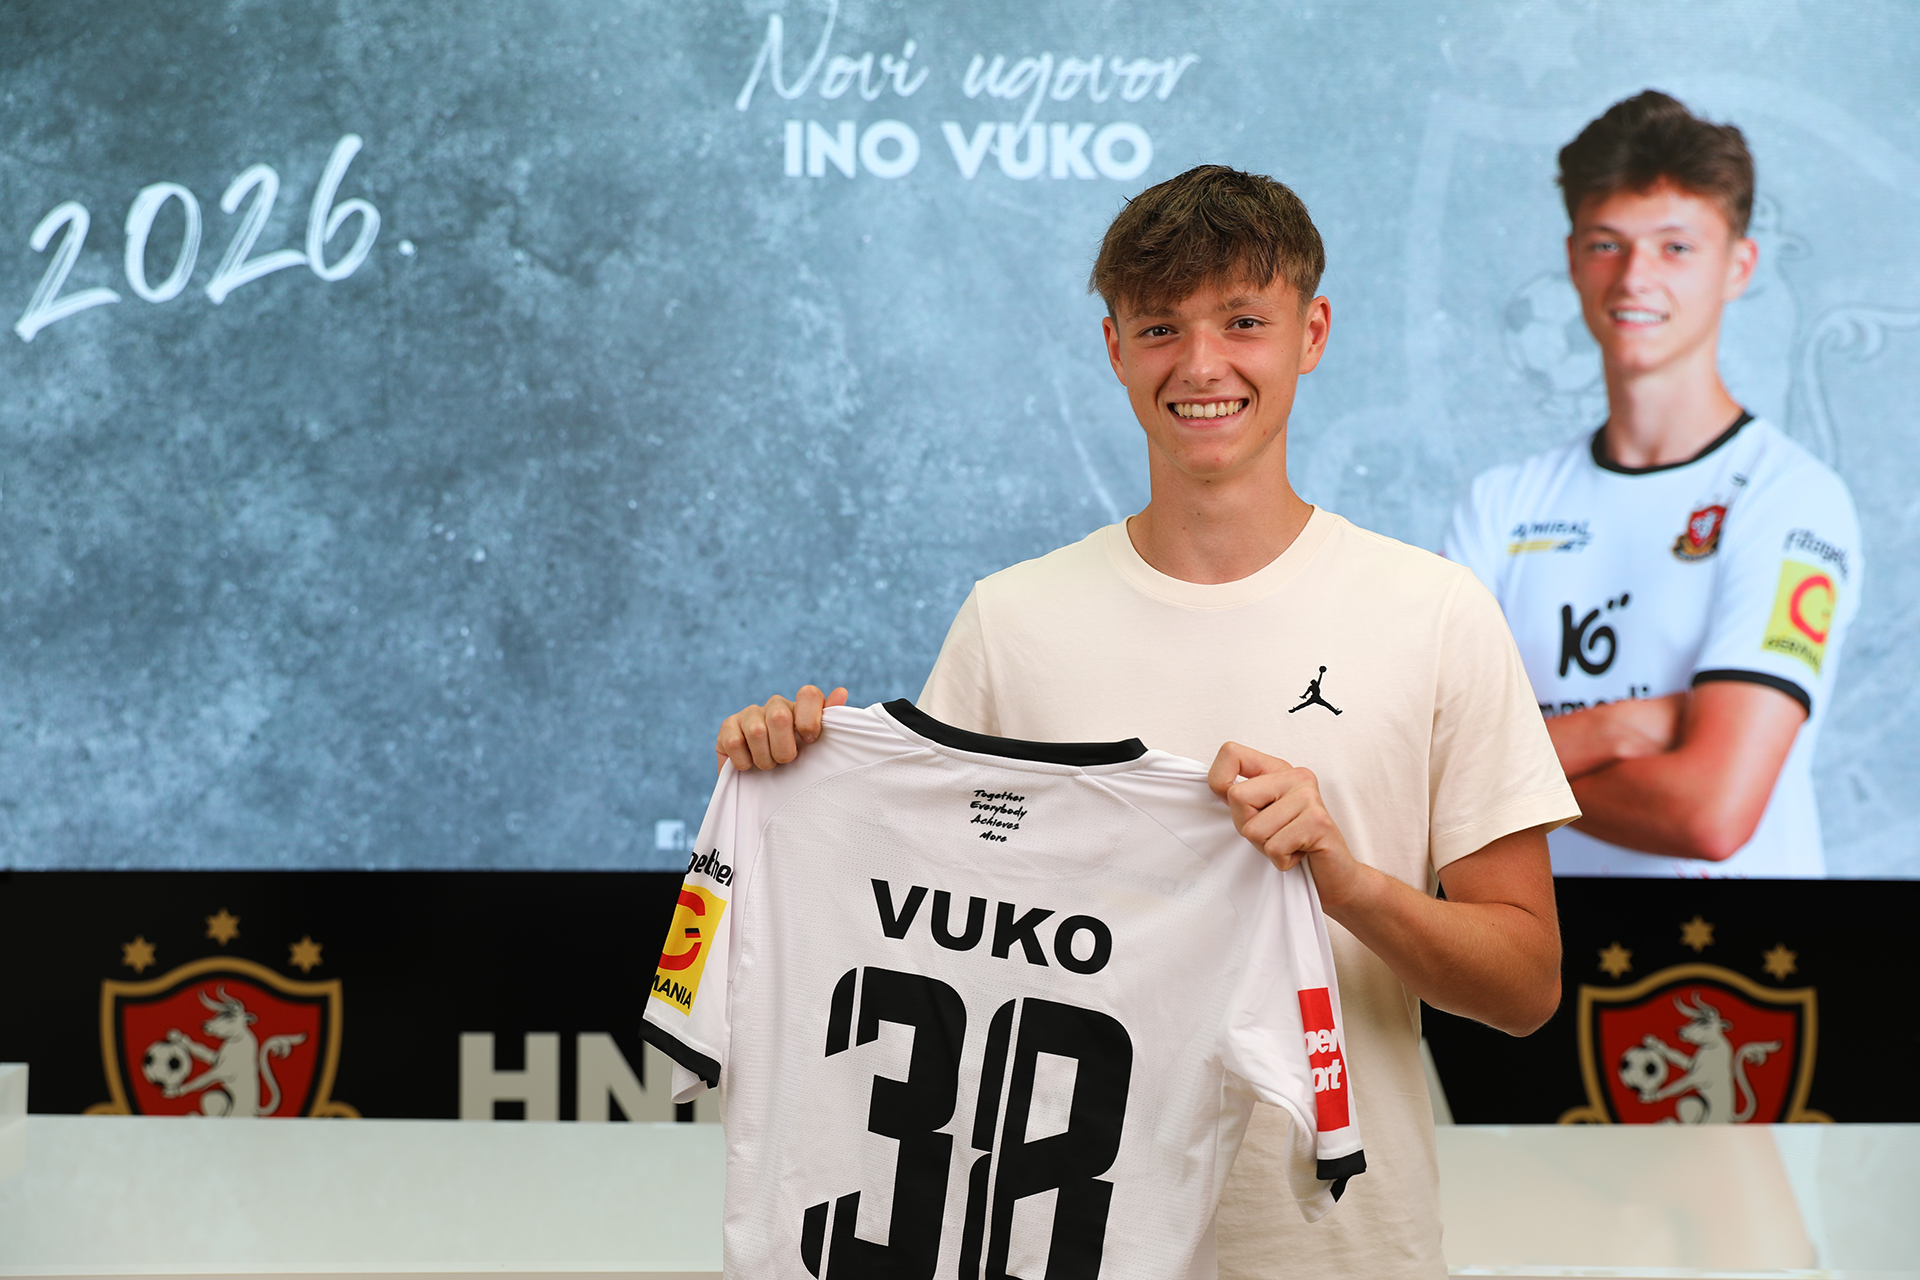 Ino Vuko potpisao stipendijski ugovor: 'Dat ću sve od sebe da opravdam povjerenje kluba!'